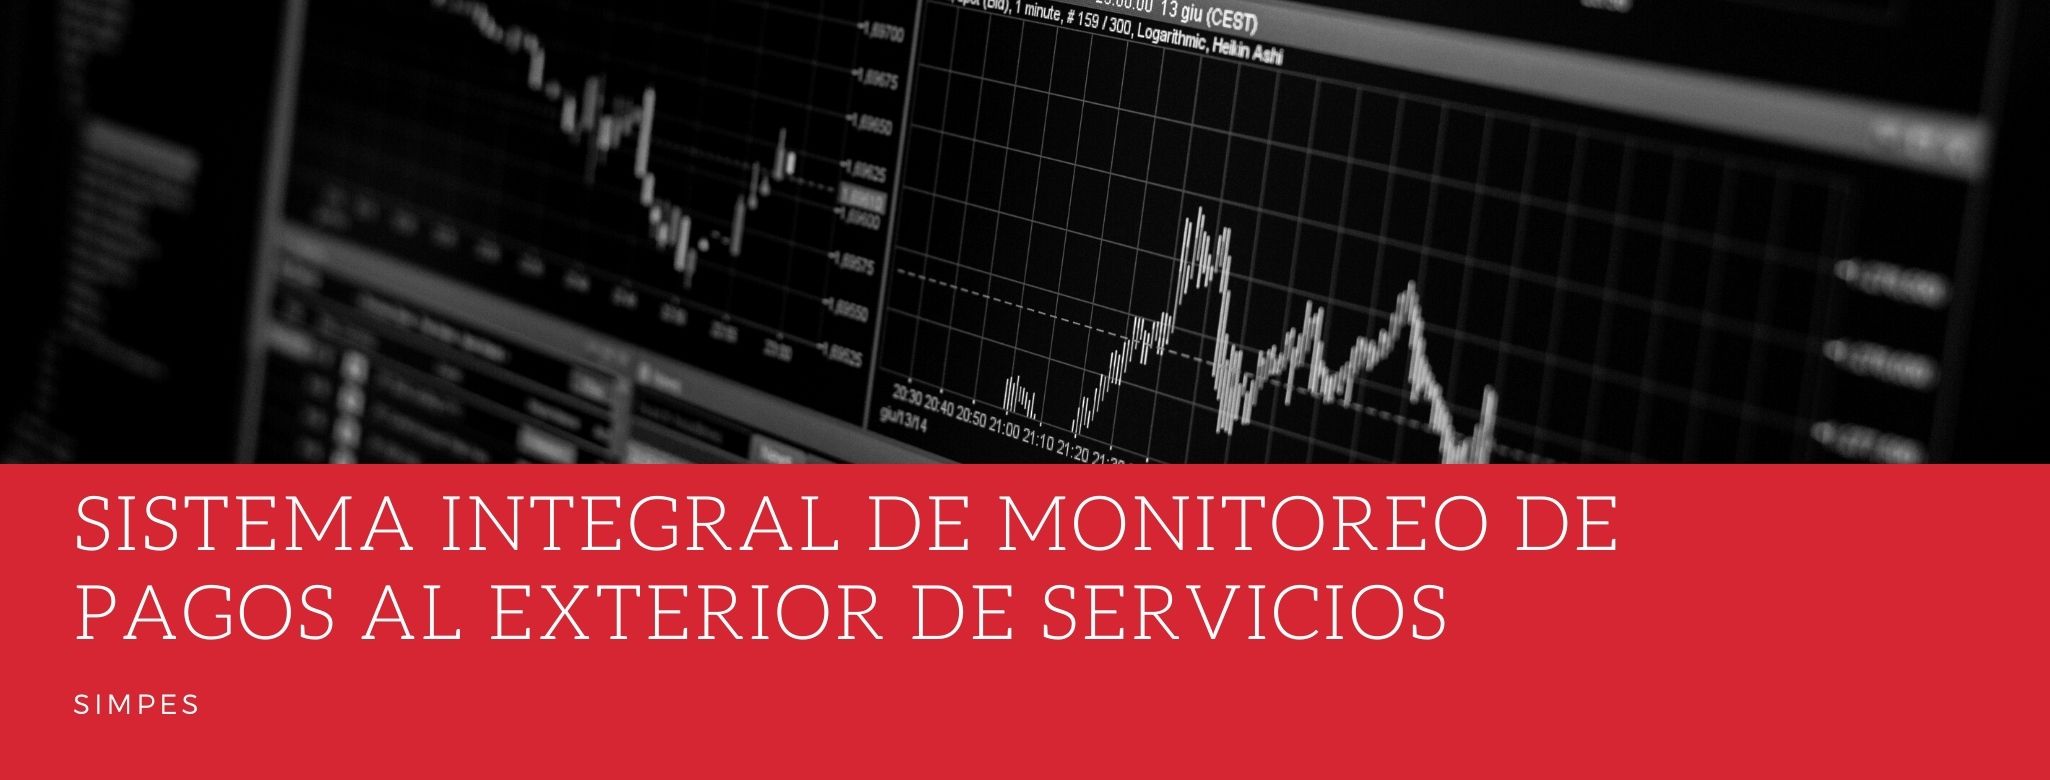 Sistema Integral de Monitoreo de Pagos al Exterior de Servicios (